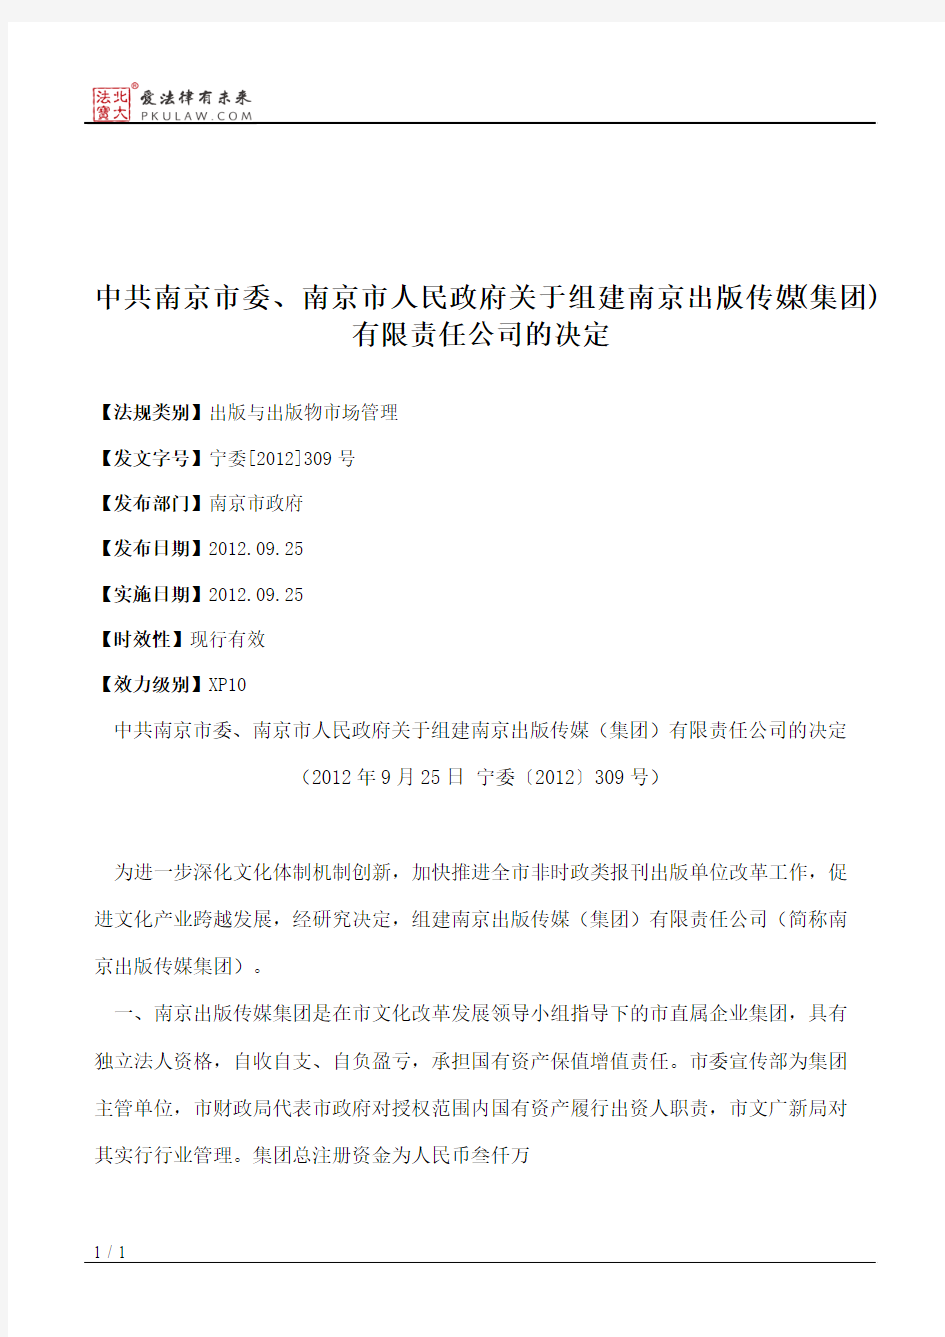 中共南京市委、南京市人民政府关于组建南京出版传媒(集团)有限责